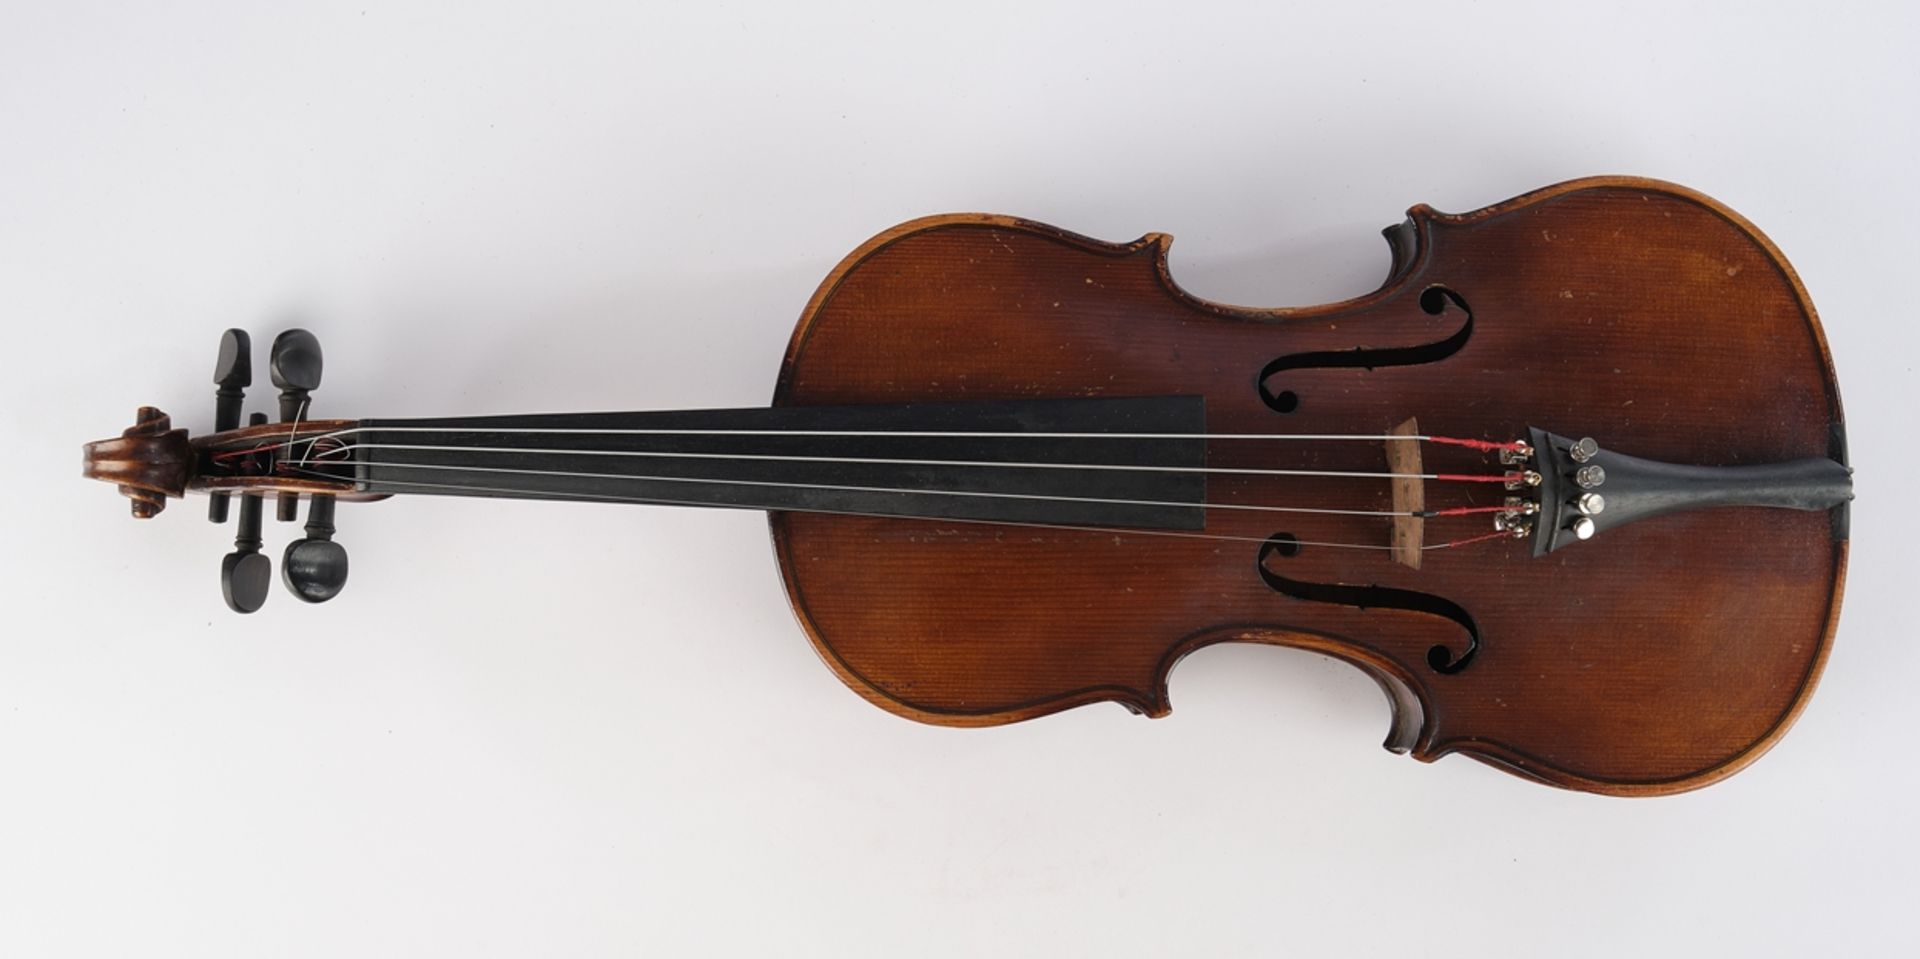 Violine, brauner Holzkorpus, unbezeichnet, 60 cm lang, mit Bogen und Koffer, Alters- und Gebrauchss - Bild 4 aus 8